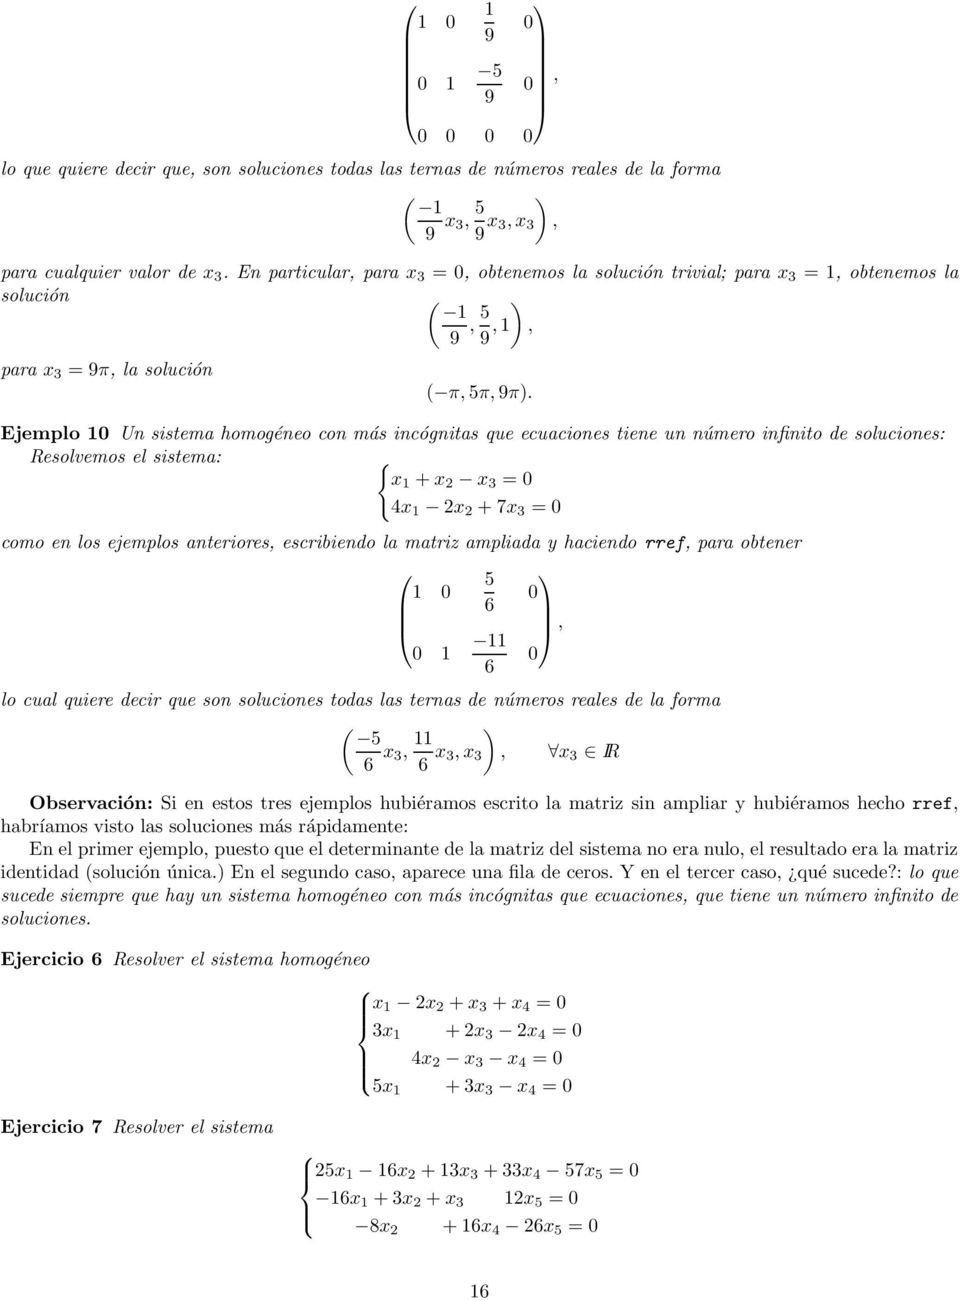 Ejemplo 10 Un sistema homogéneo con más incógnitas que ecuaciones tiene un número infinito de soluciones: Resolvemos el sistema: { x 1 + x 2 x 3 = 0 4x 1 2x 2 + 7x 3 = 0 como en los ejemplos